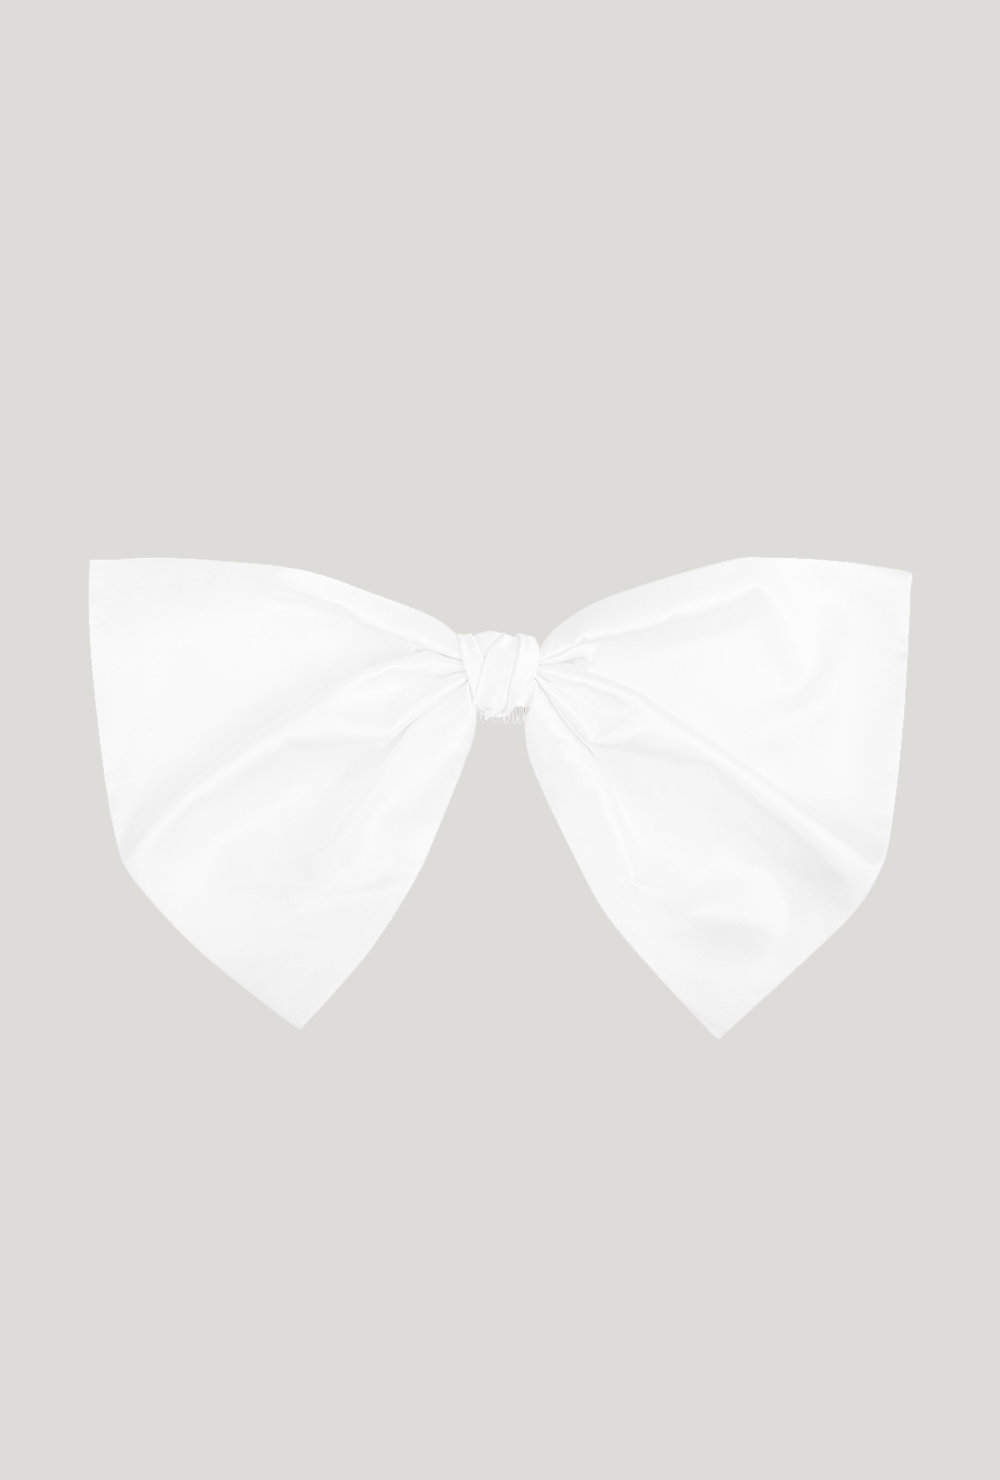 Biała jedwabna kokarda do włosów oversize White silk oversized hair bow